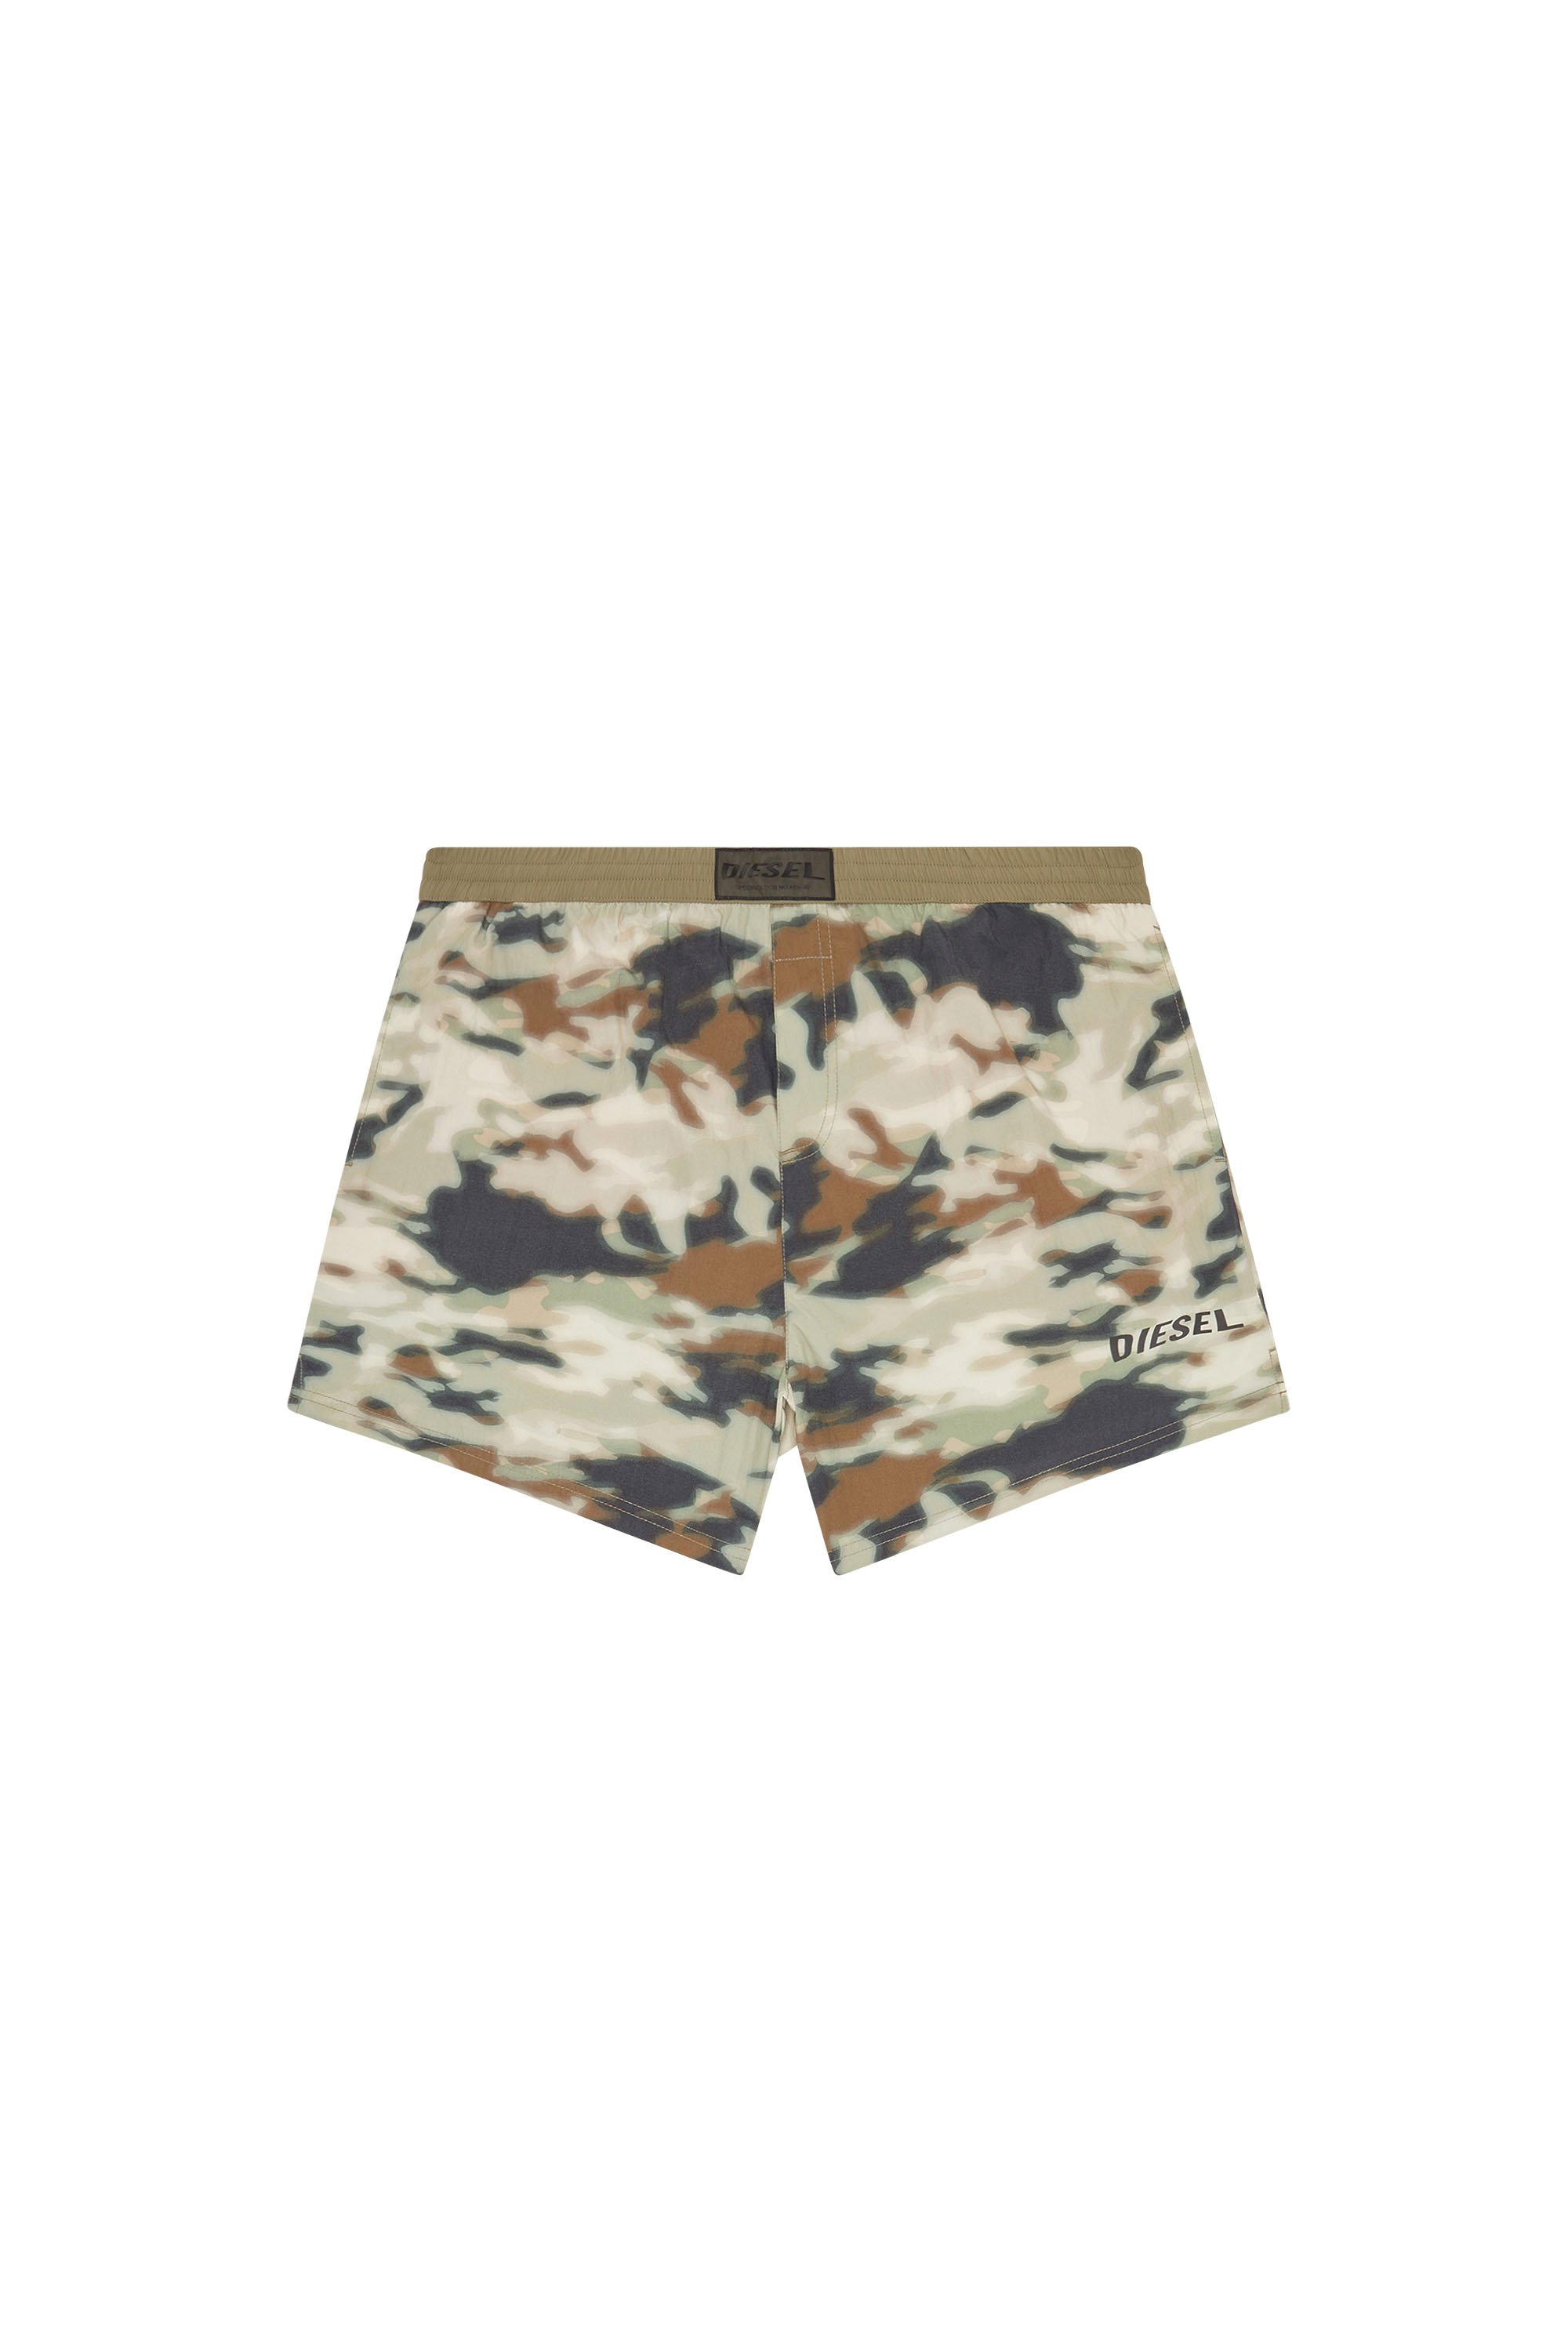 Diesel - Mittellange Bade-Shorts mit Camouflage-Print - Badeshorts - Herren - Bunt